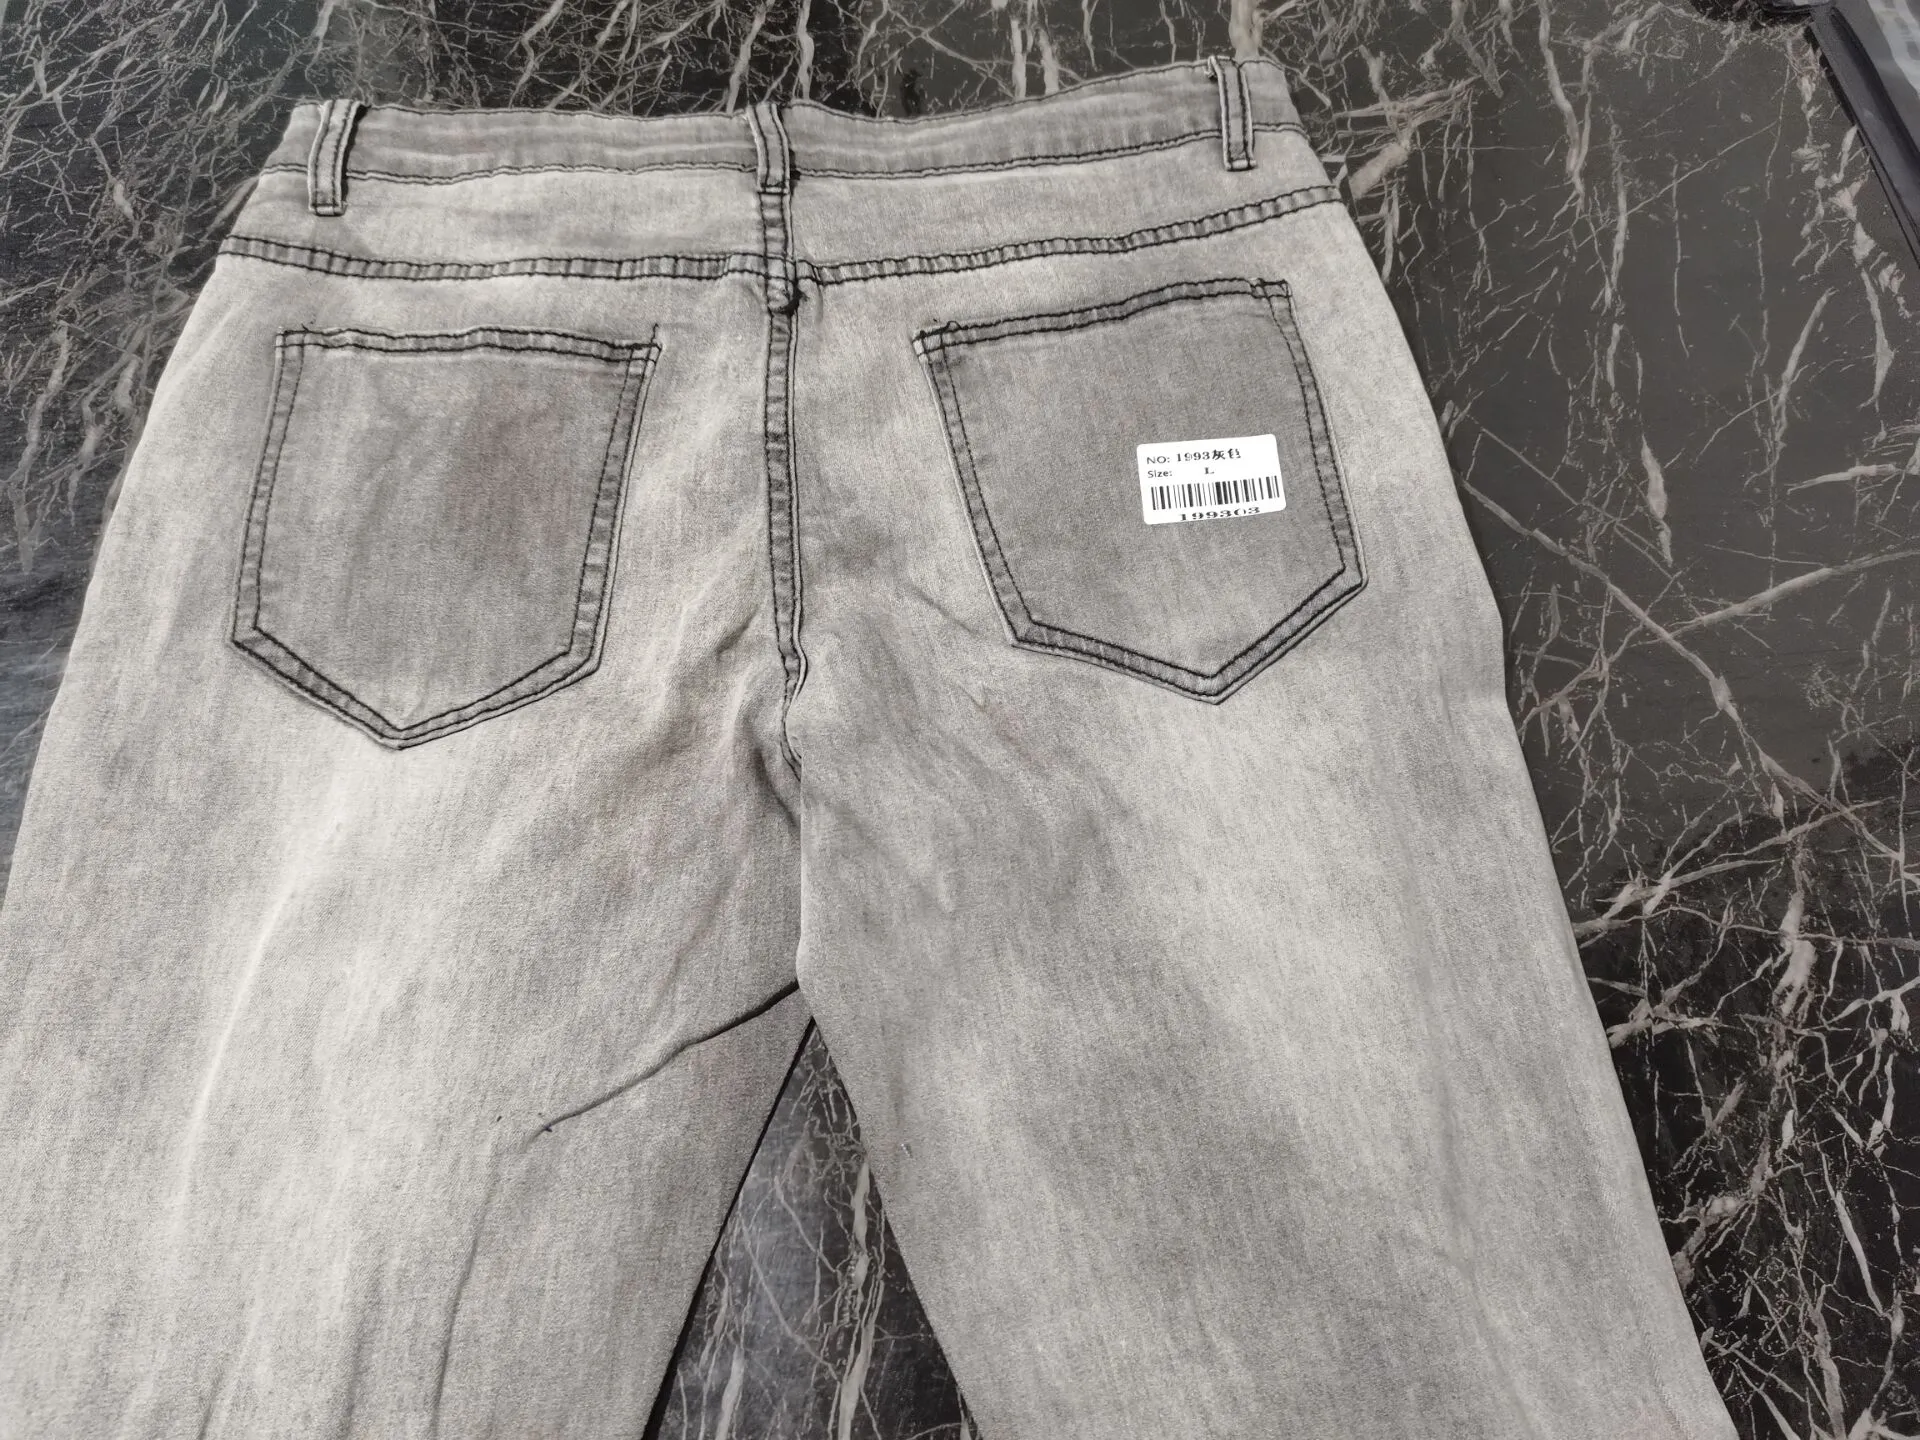 Мужские тощие разорванные джинсы плед пэчворк джинсовые брюки гип-хоп печати бегая карандаш высокое качество джинсовые мужчины брюки размер 29 38 42